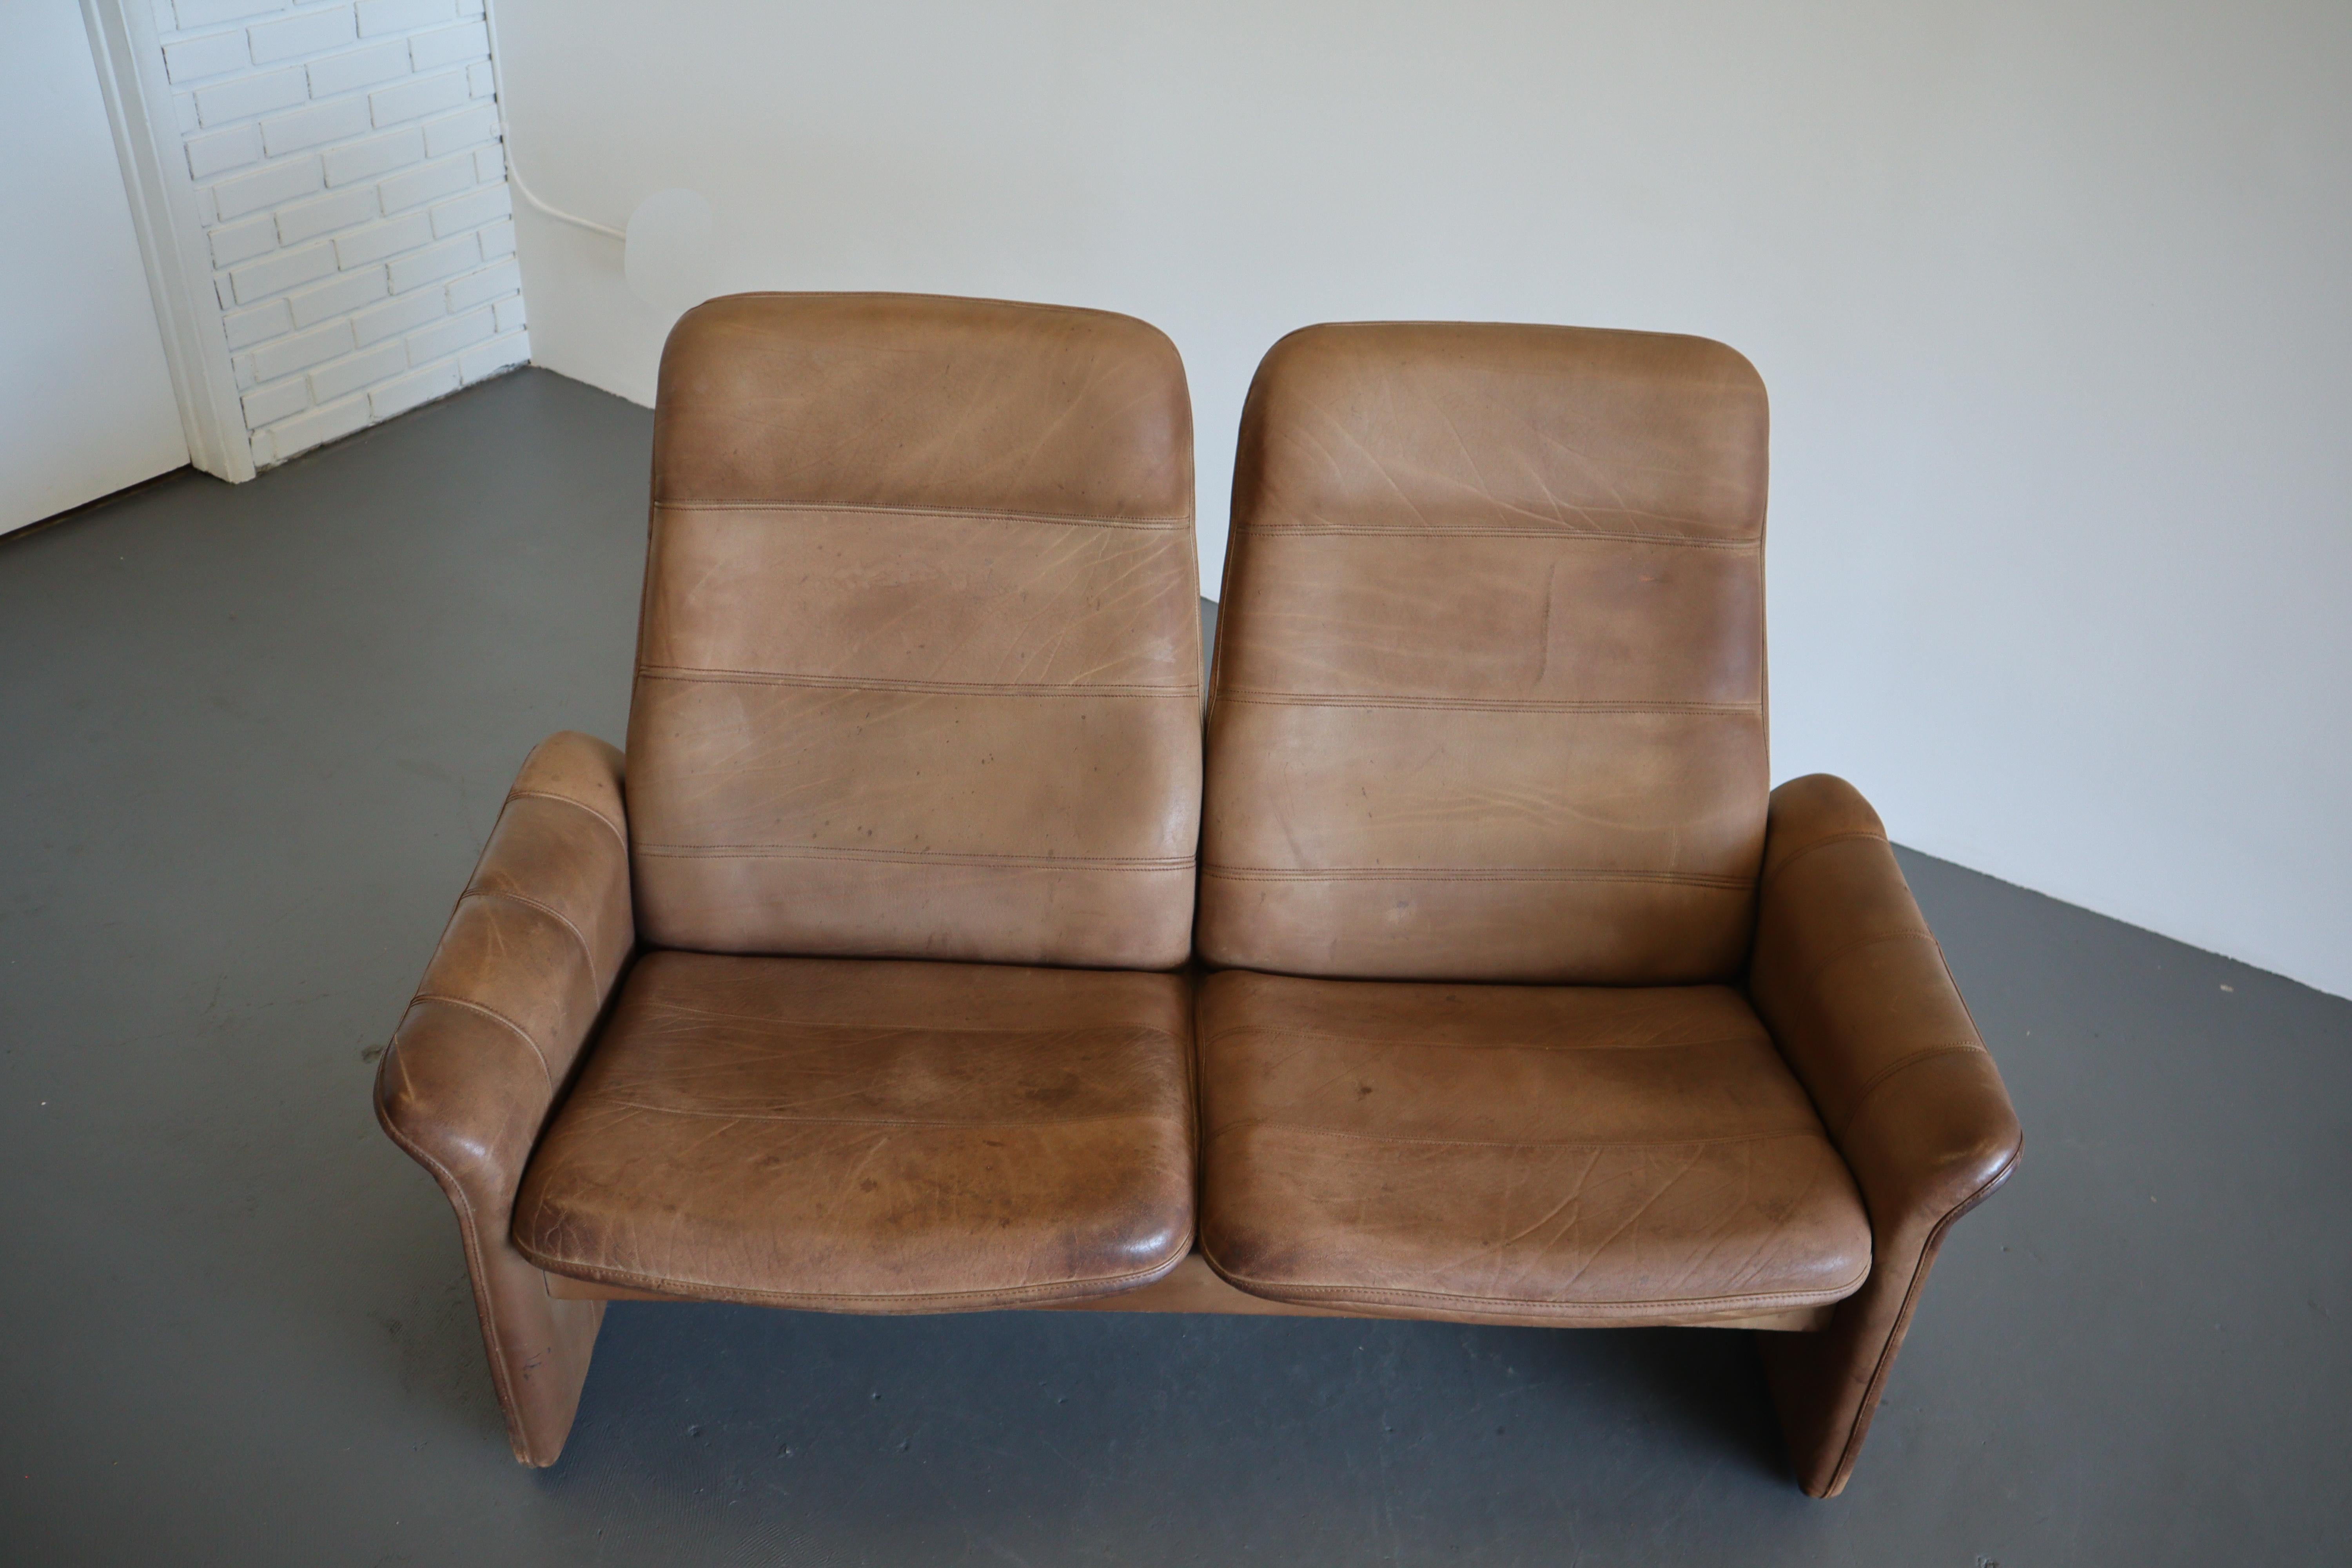 Ein beeindruckendes 2-Sitzer-Sofa aus kastanienfarbenem Leder. Die sanften Rundungen und klaren Linien verbinden sich zu einem lustigen und zugleich funktionalen Space-Age-Design. Mit diesem garantierten Gesprächsthema werten Sie Ihr Wohnzimmer auf.